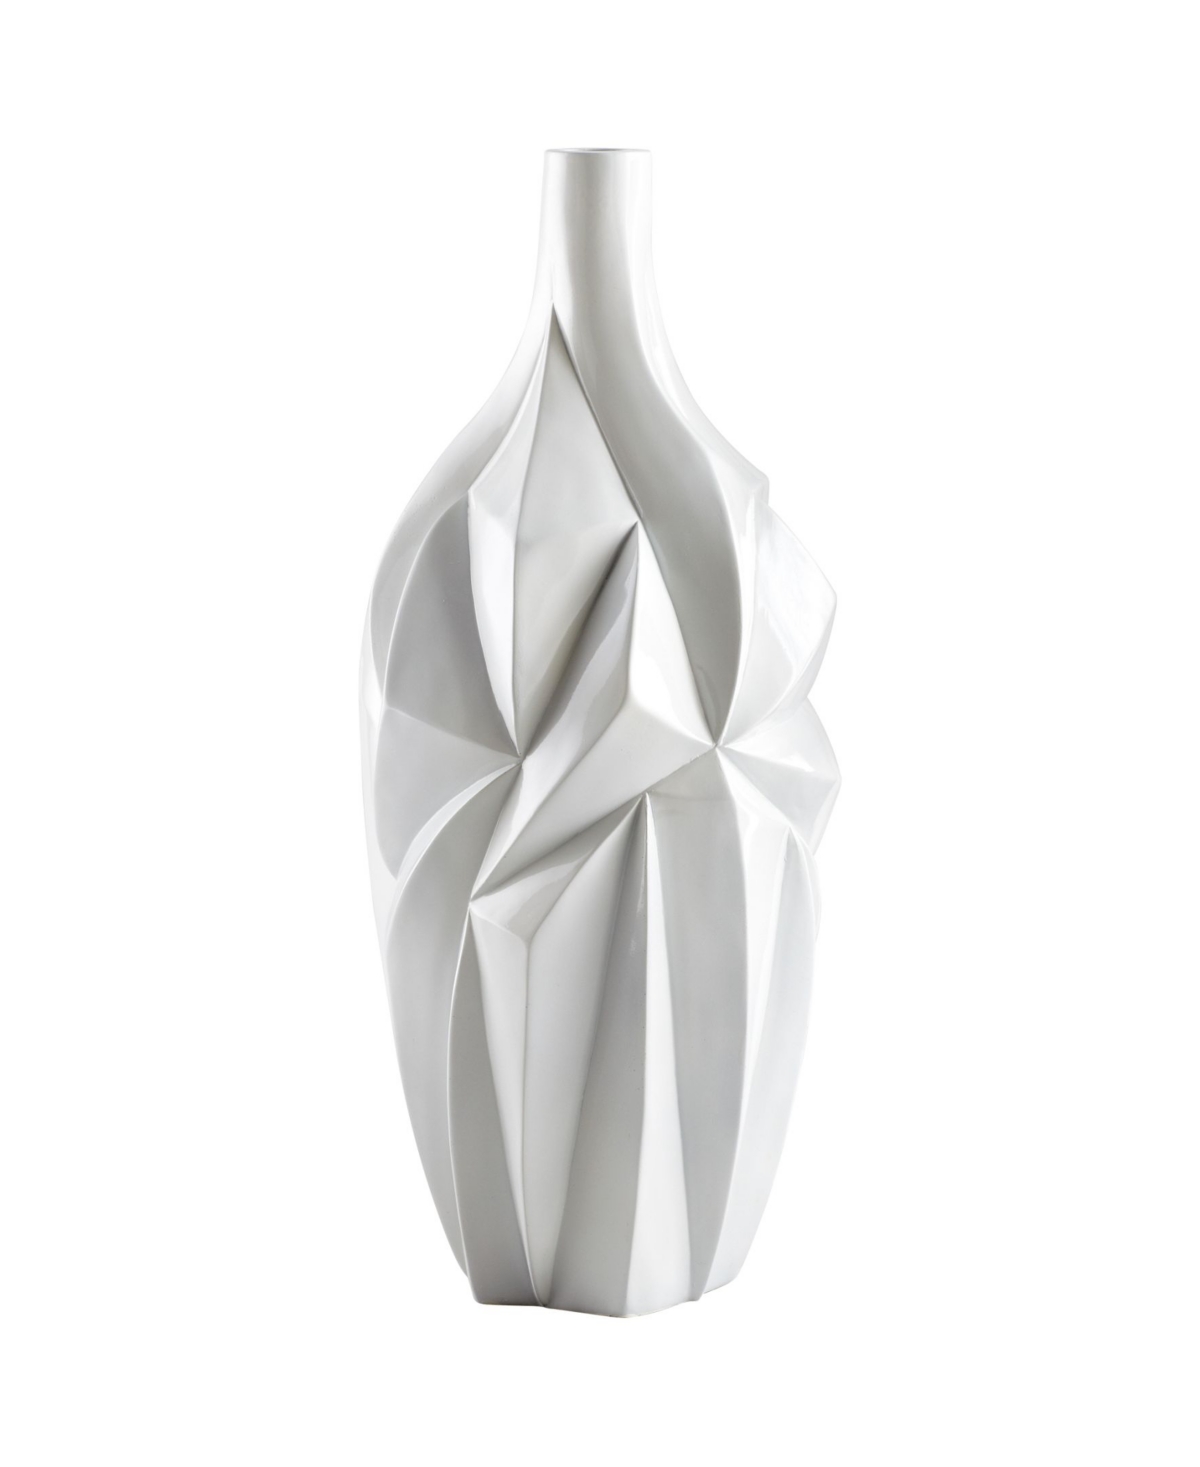 Cyan Design Glacier Vase